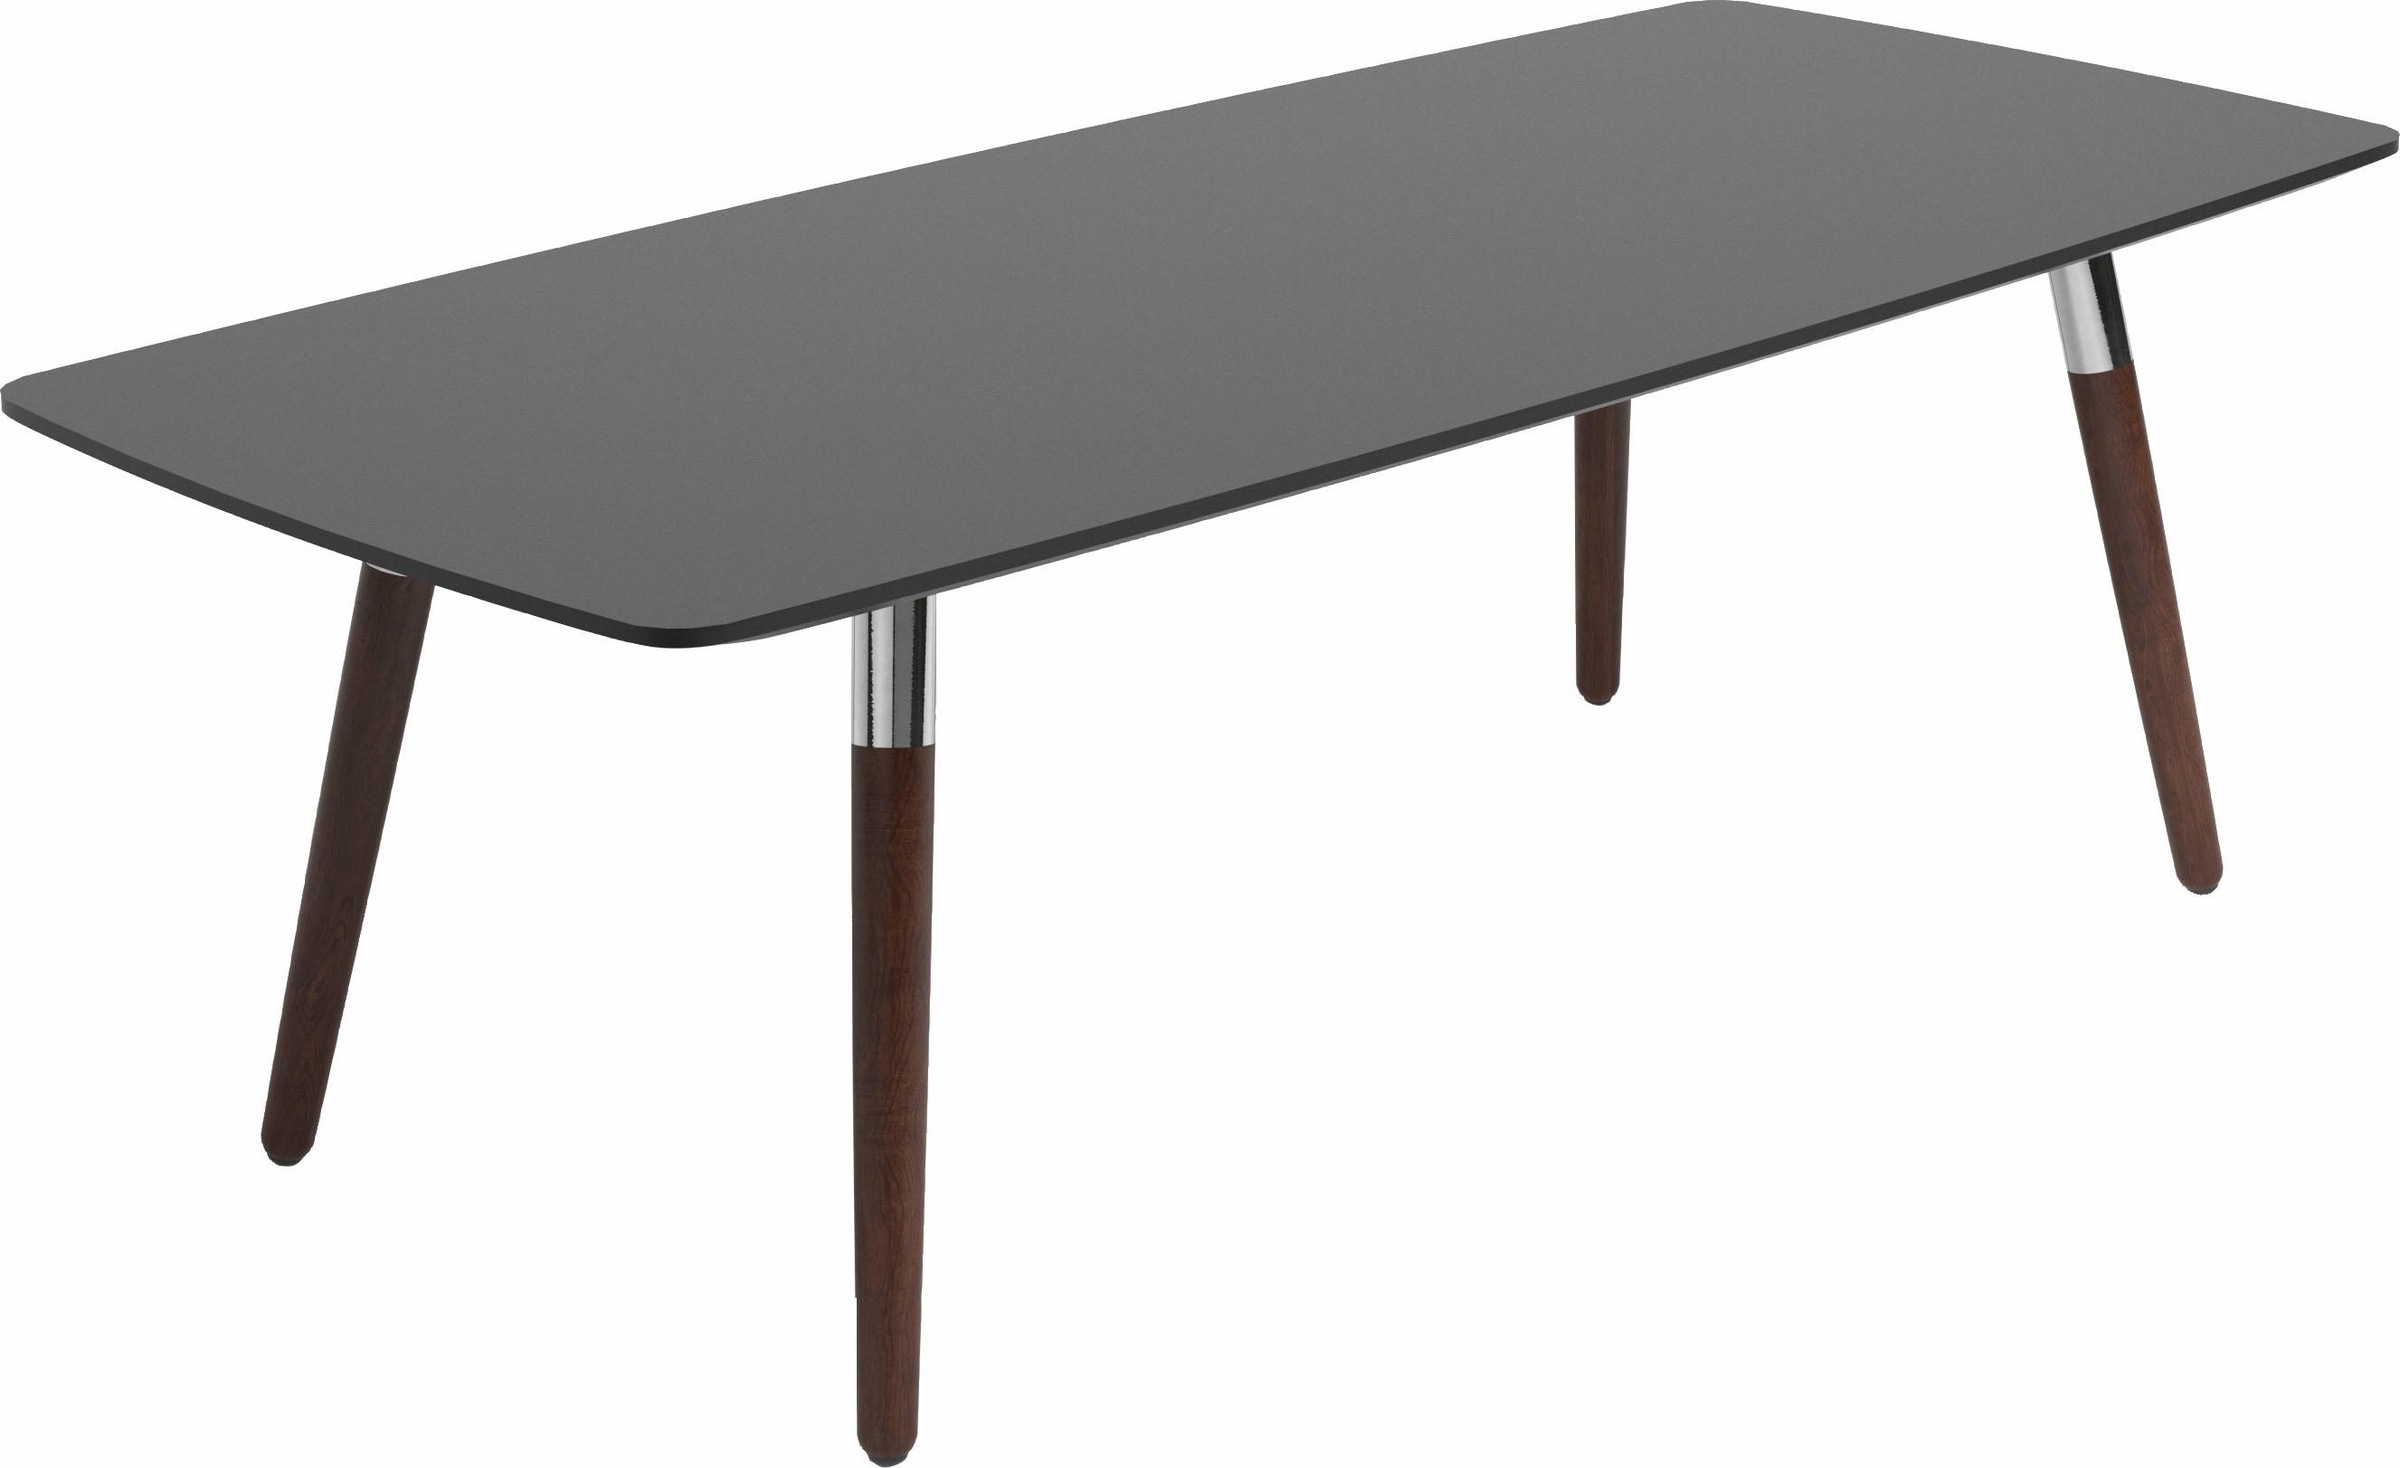 Stressless Couchtisch Style, mit braunen Holzbeinen, Tischplatte in 3 Farben, rechteckig